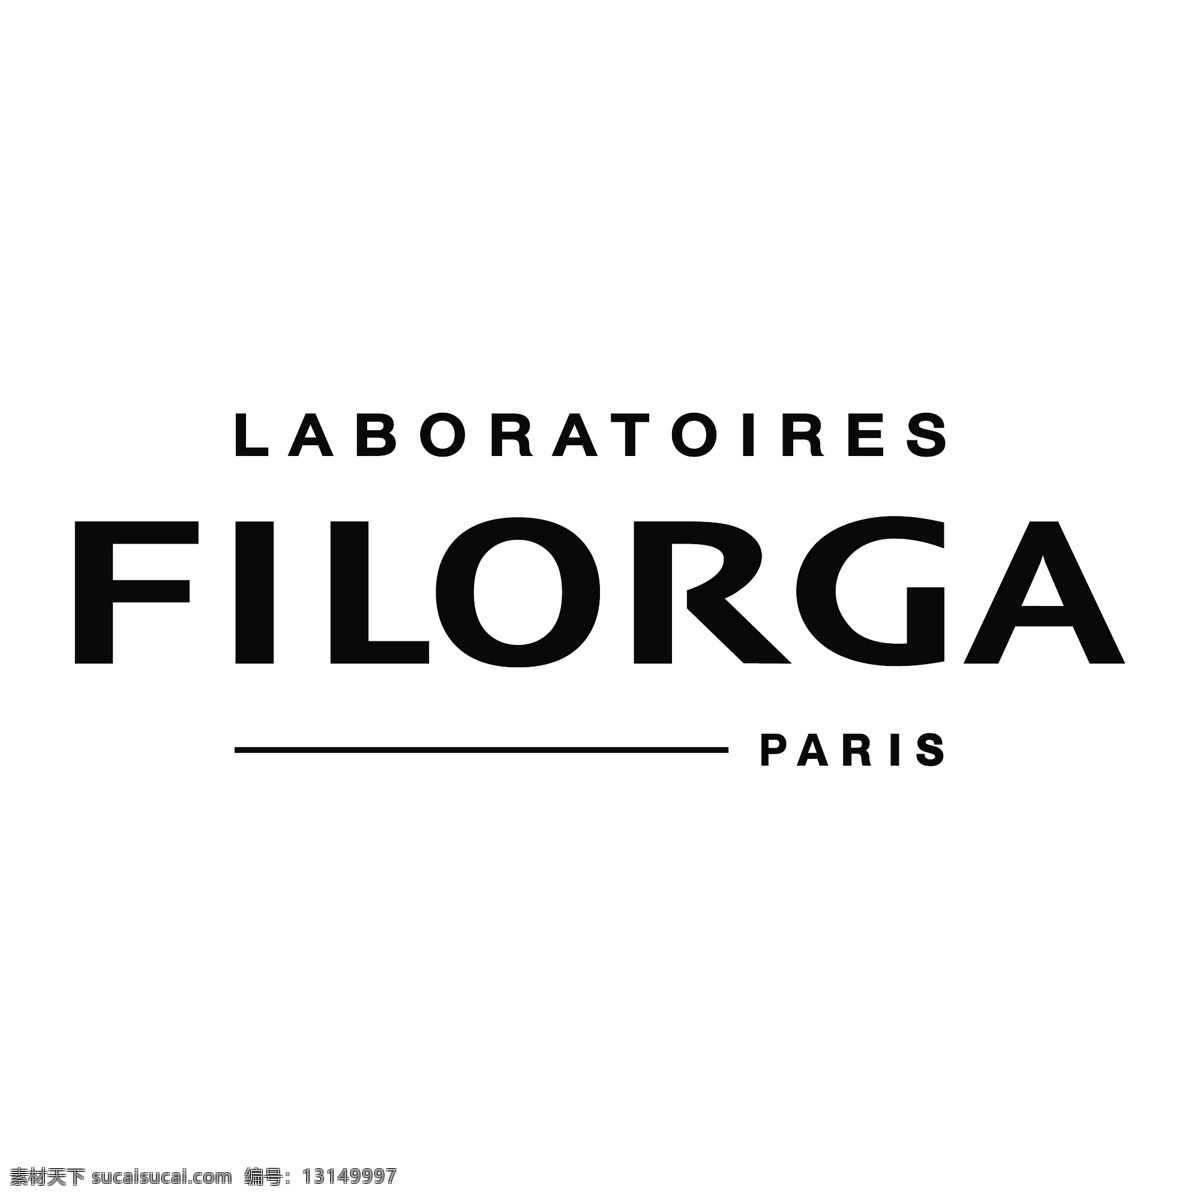 菲洛 嘉 logo 菲洛嘉 filorga filorgalogo 美妆logo 标志图标 公共标识标志